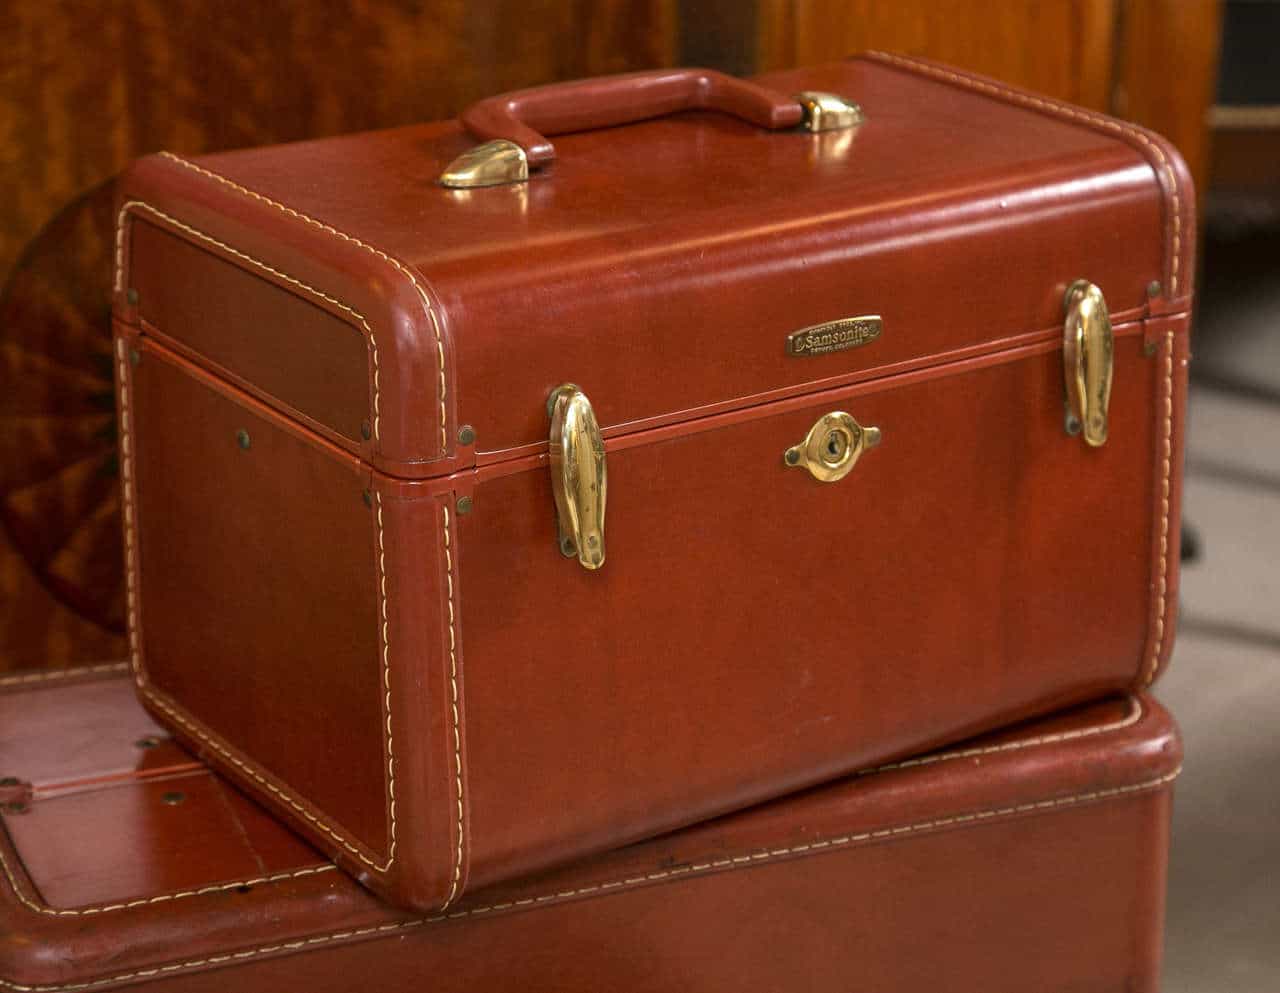 What’s Vintage Samsonite Luggage Worth?